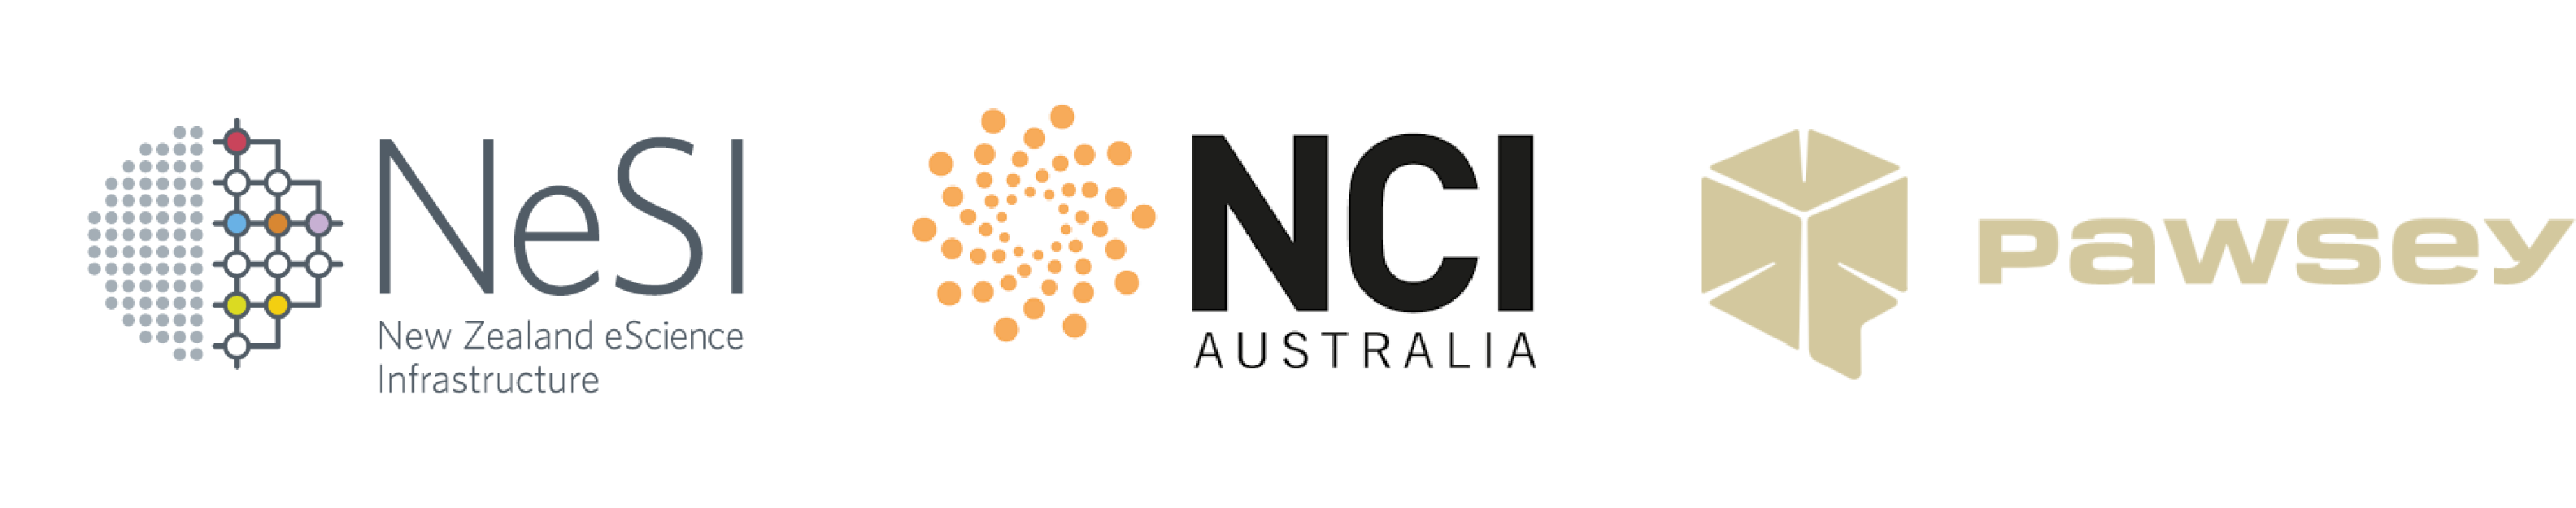 NeSI, NCI Australia, Pawsey logos